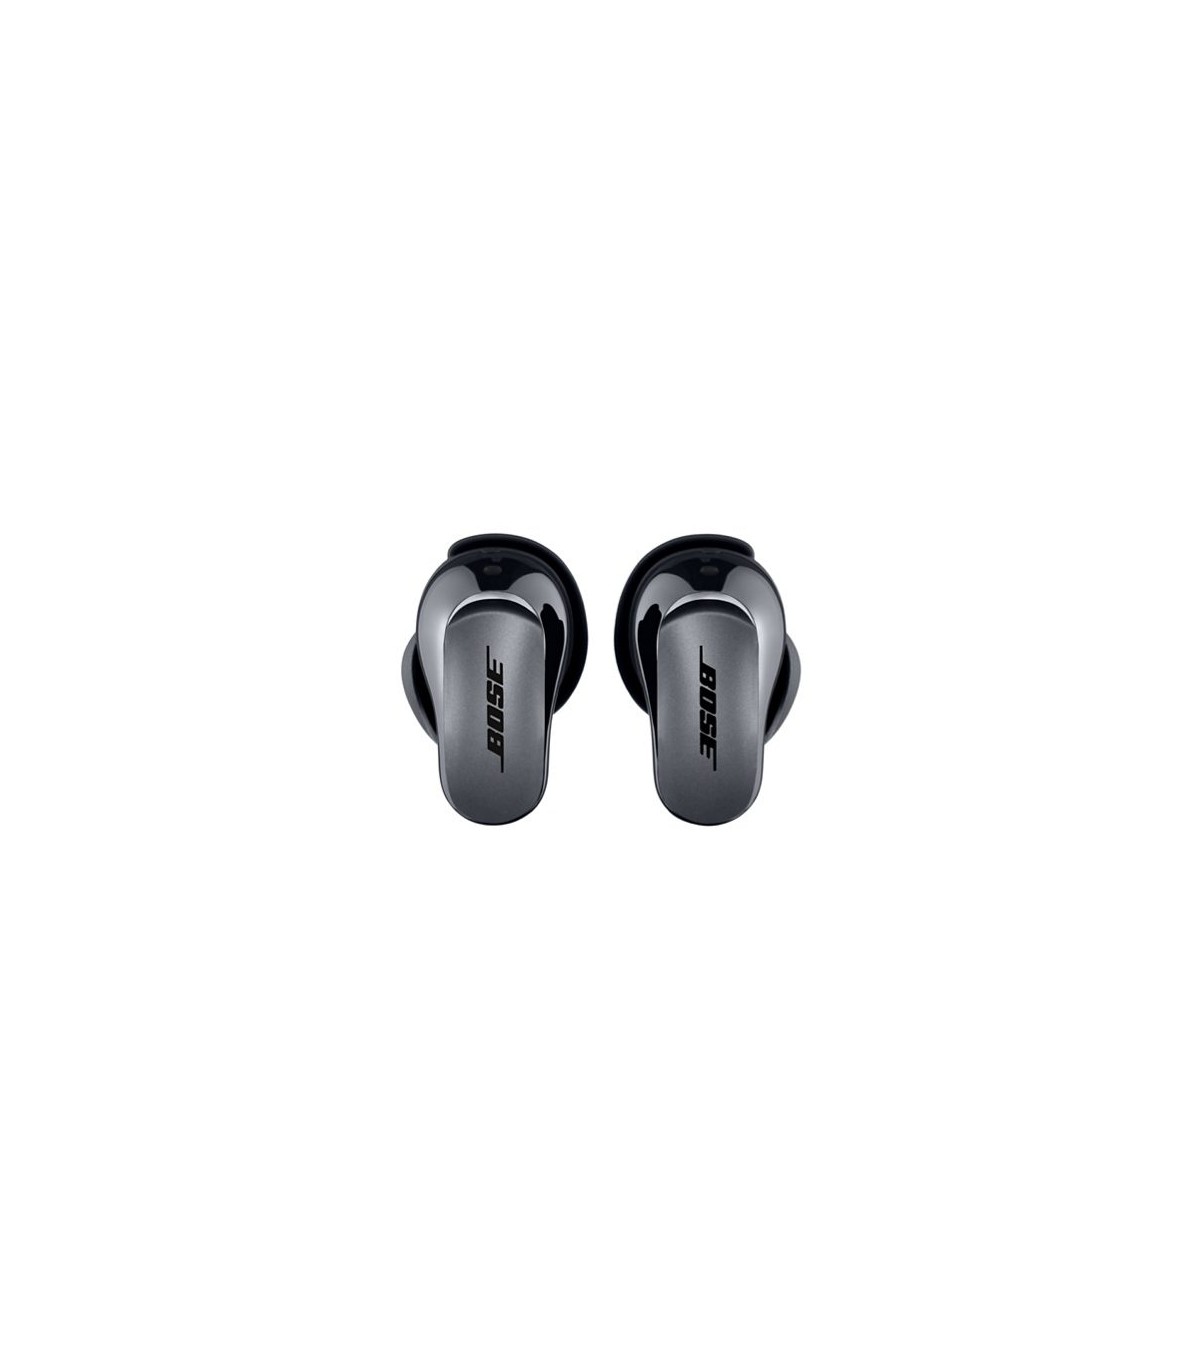 Auriculares Bose QuietComfort Earbuds con Cancelación de Ruido